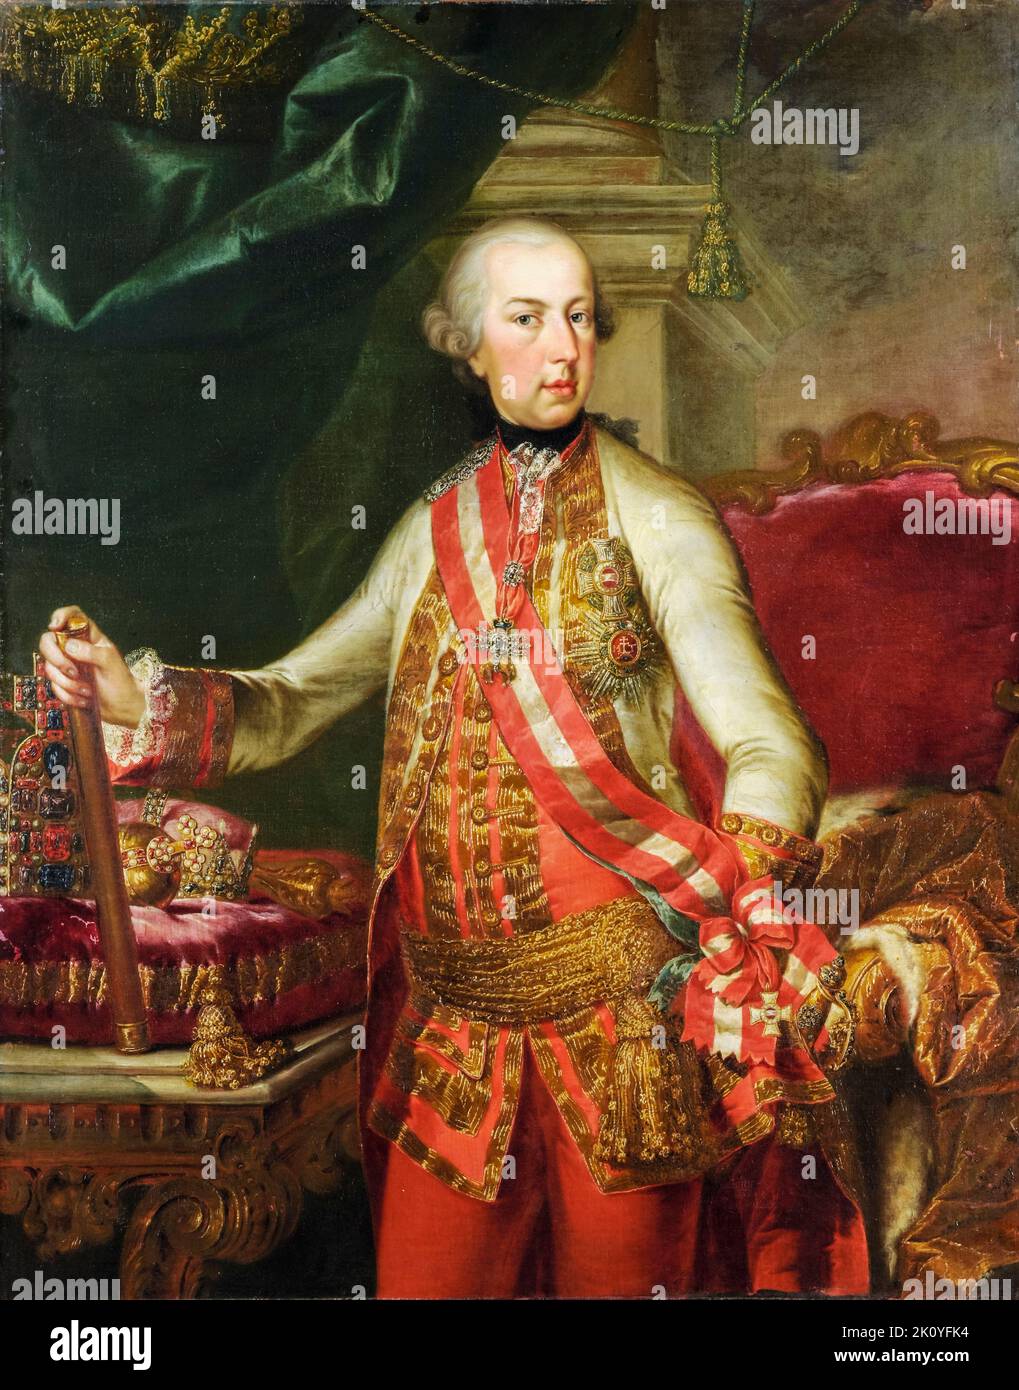 Giuseppe II (1741-1790), imperatore del Sacro Romano Impero, Arciduca d'Austria (1765-1790), ritratto dipinto ad olio su tela di Johann Nikolaus Grooth, prima del 1784 Foto Stock